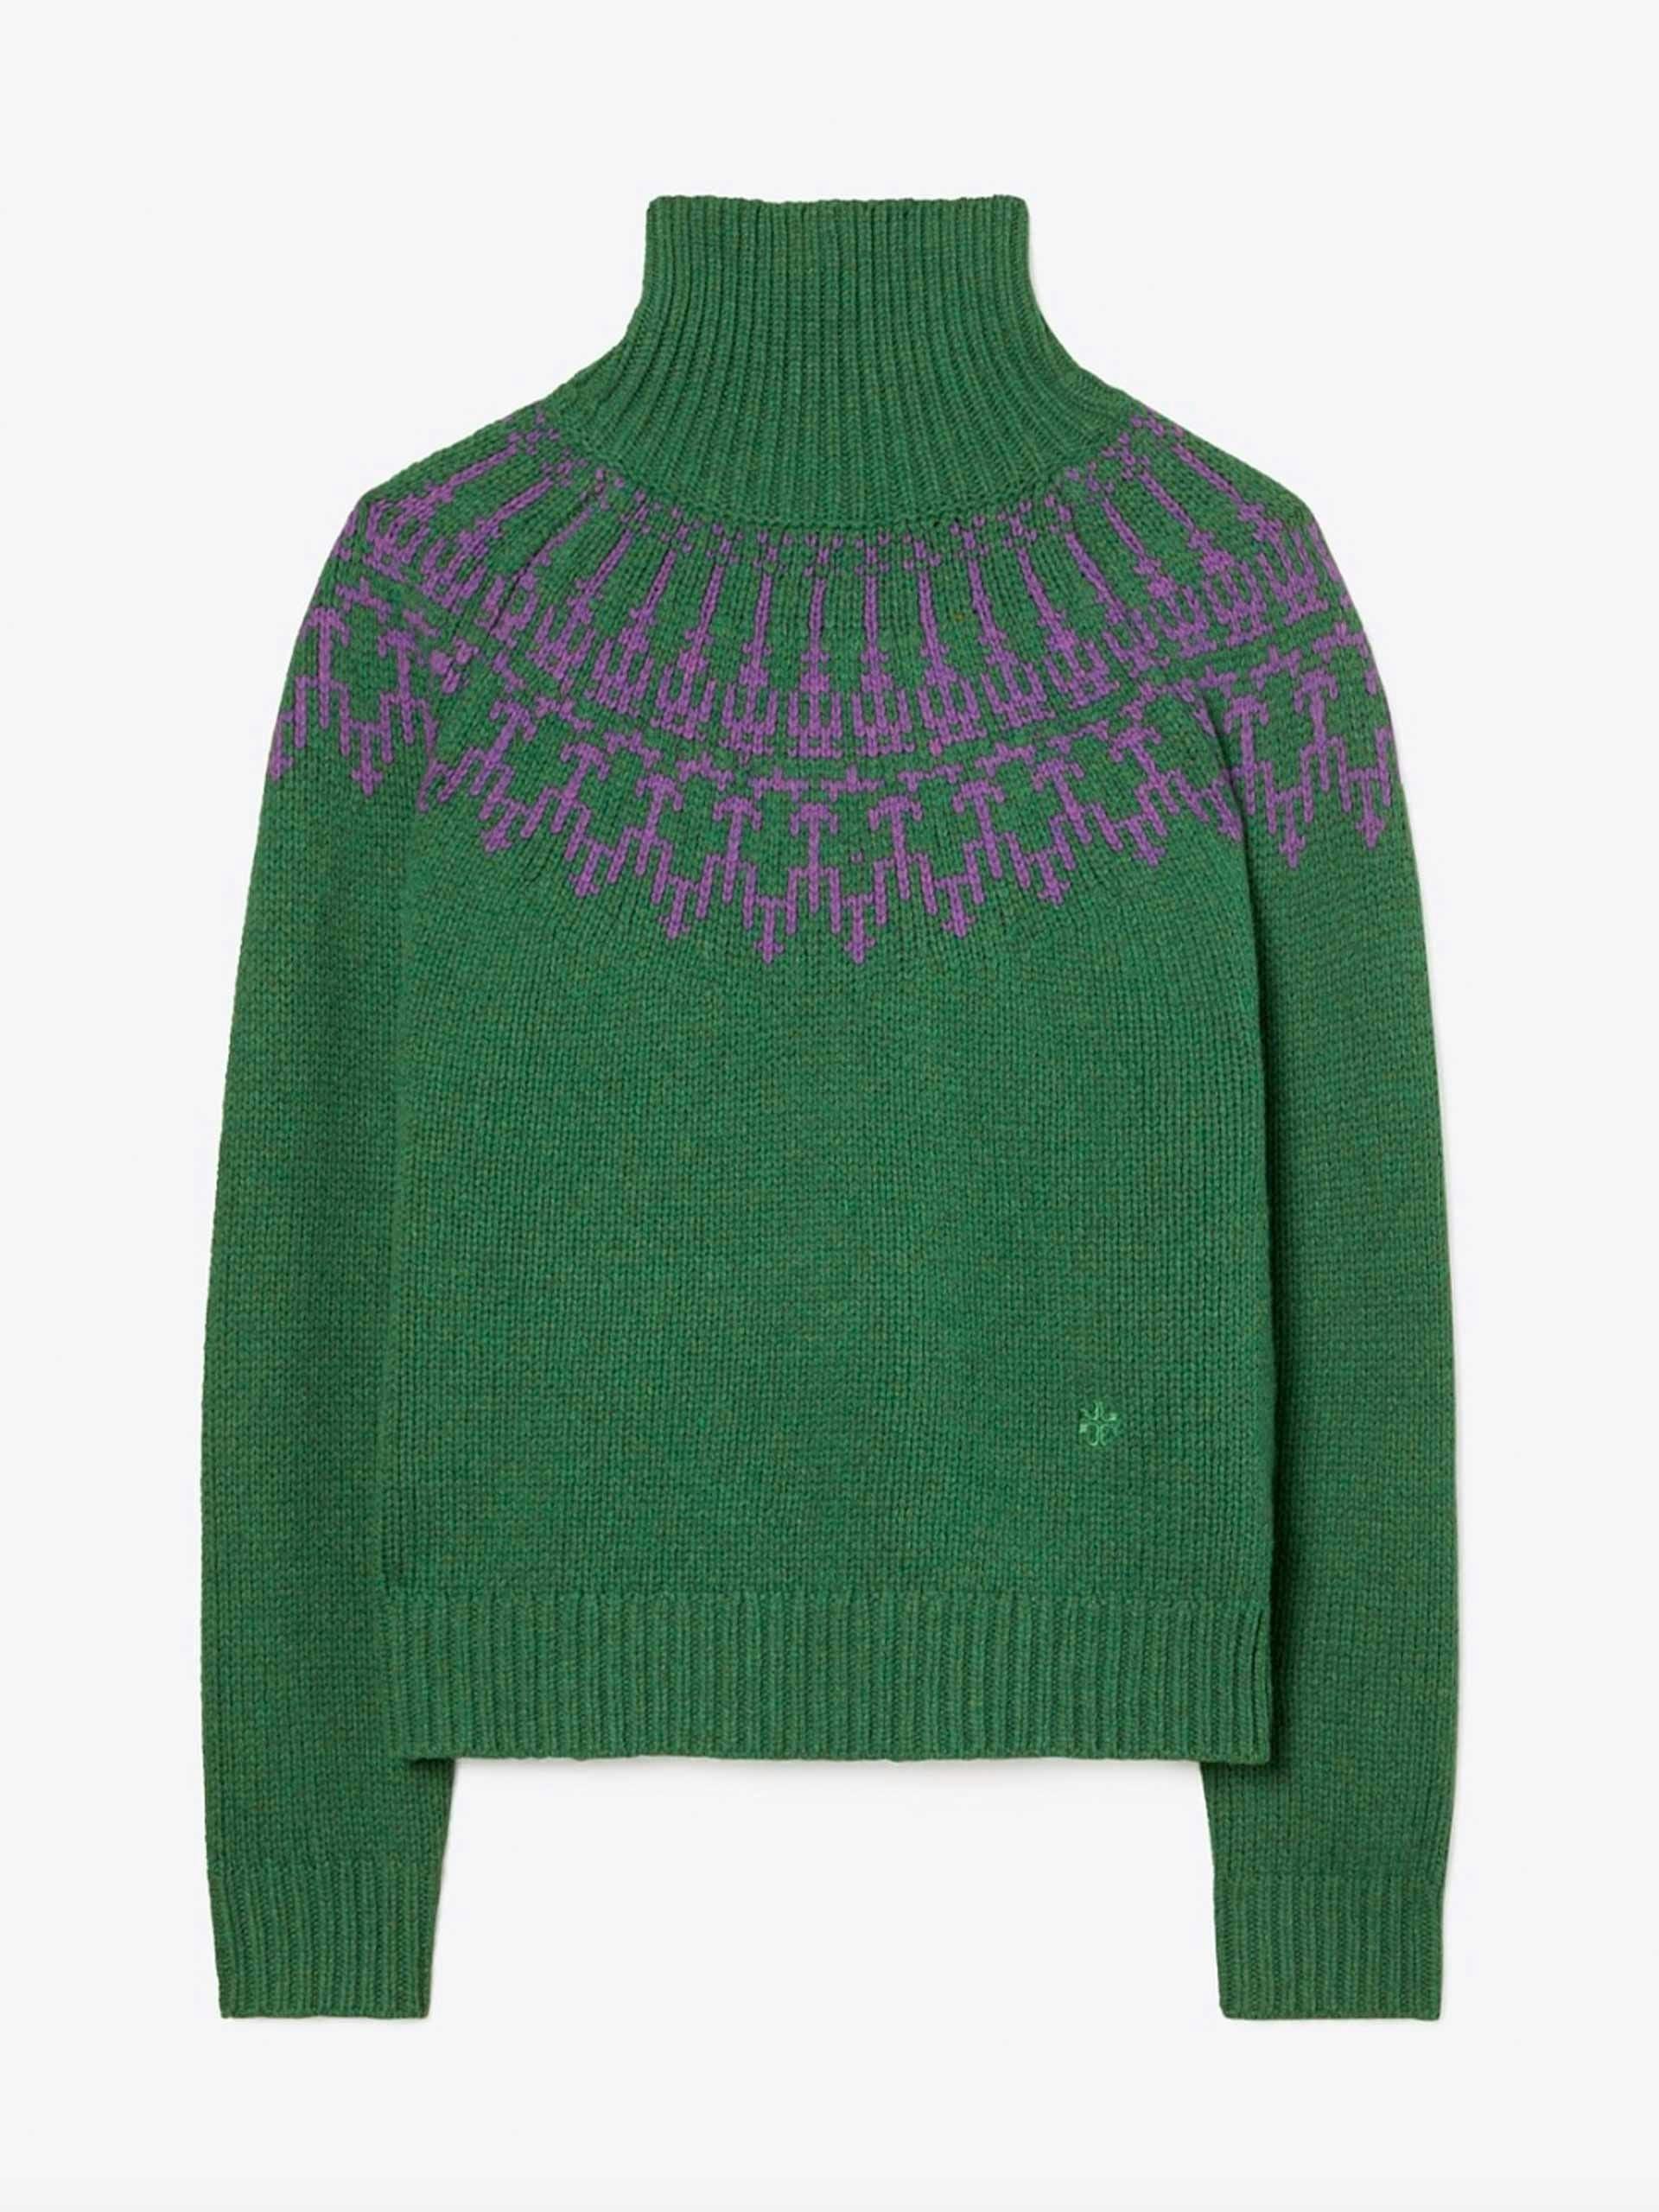 Merino fair isle sweater